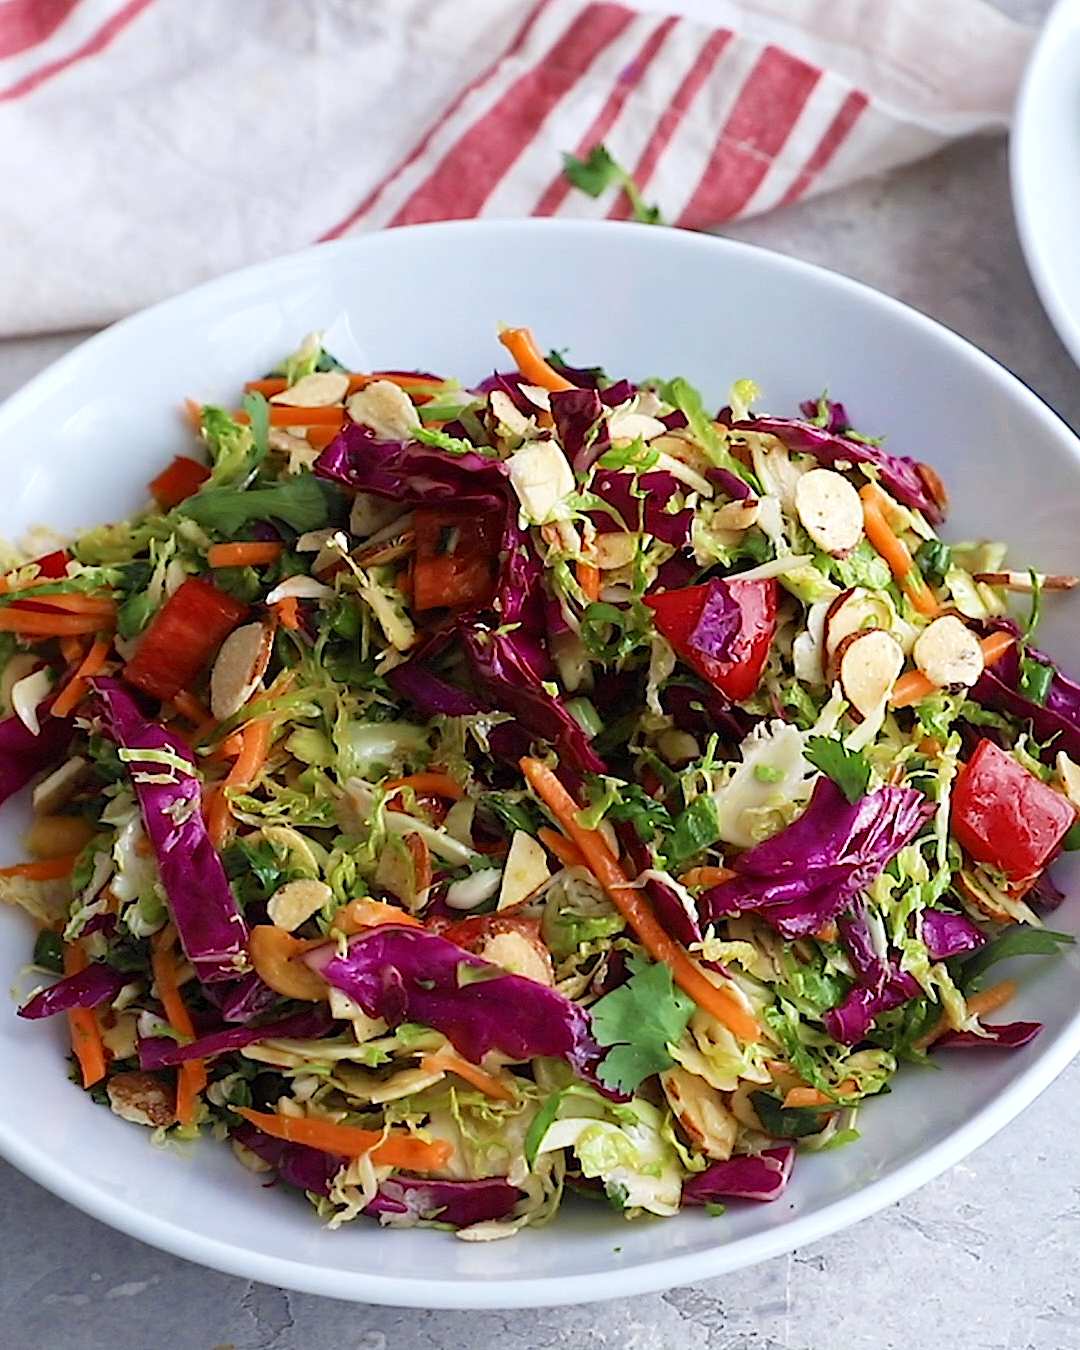 18 diet Dinner salad ideas